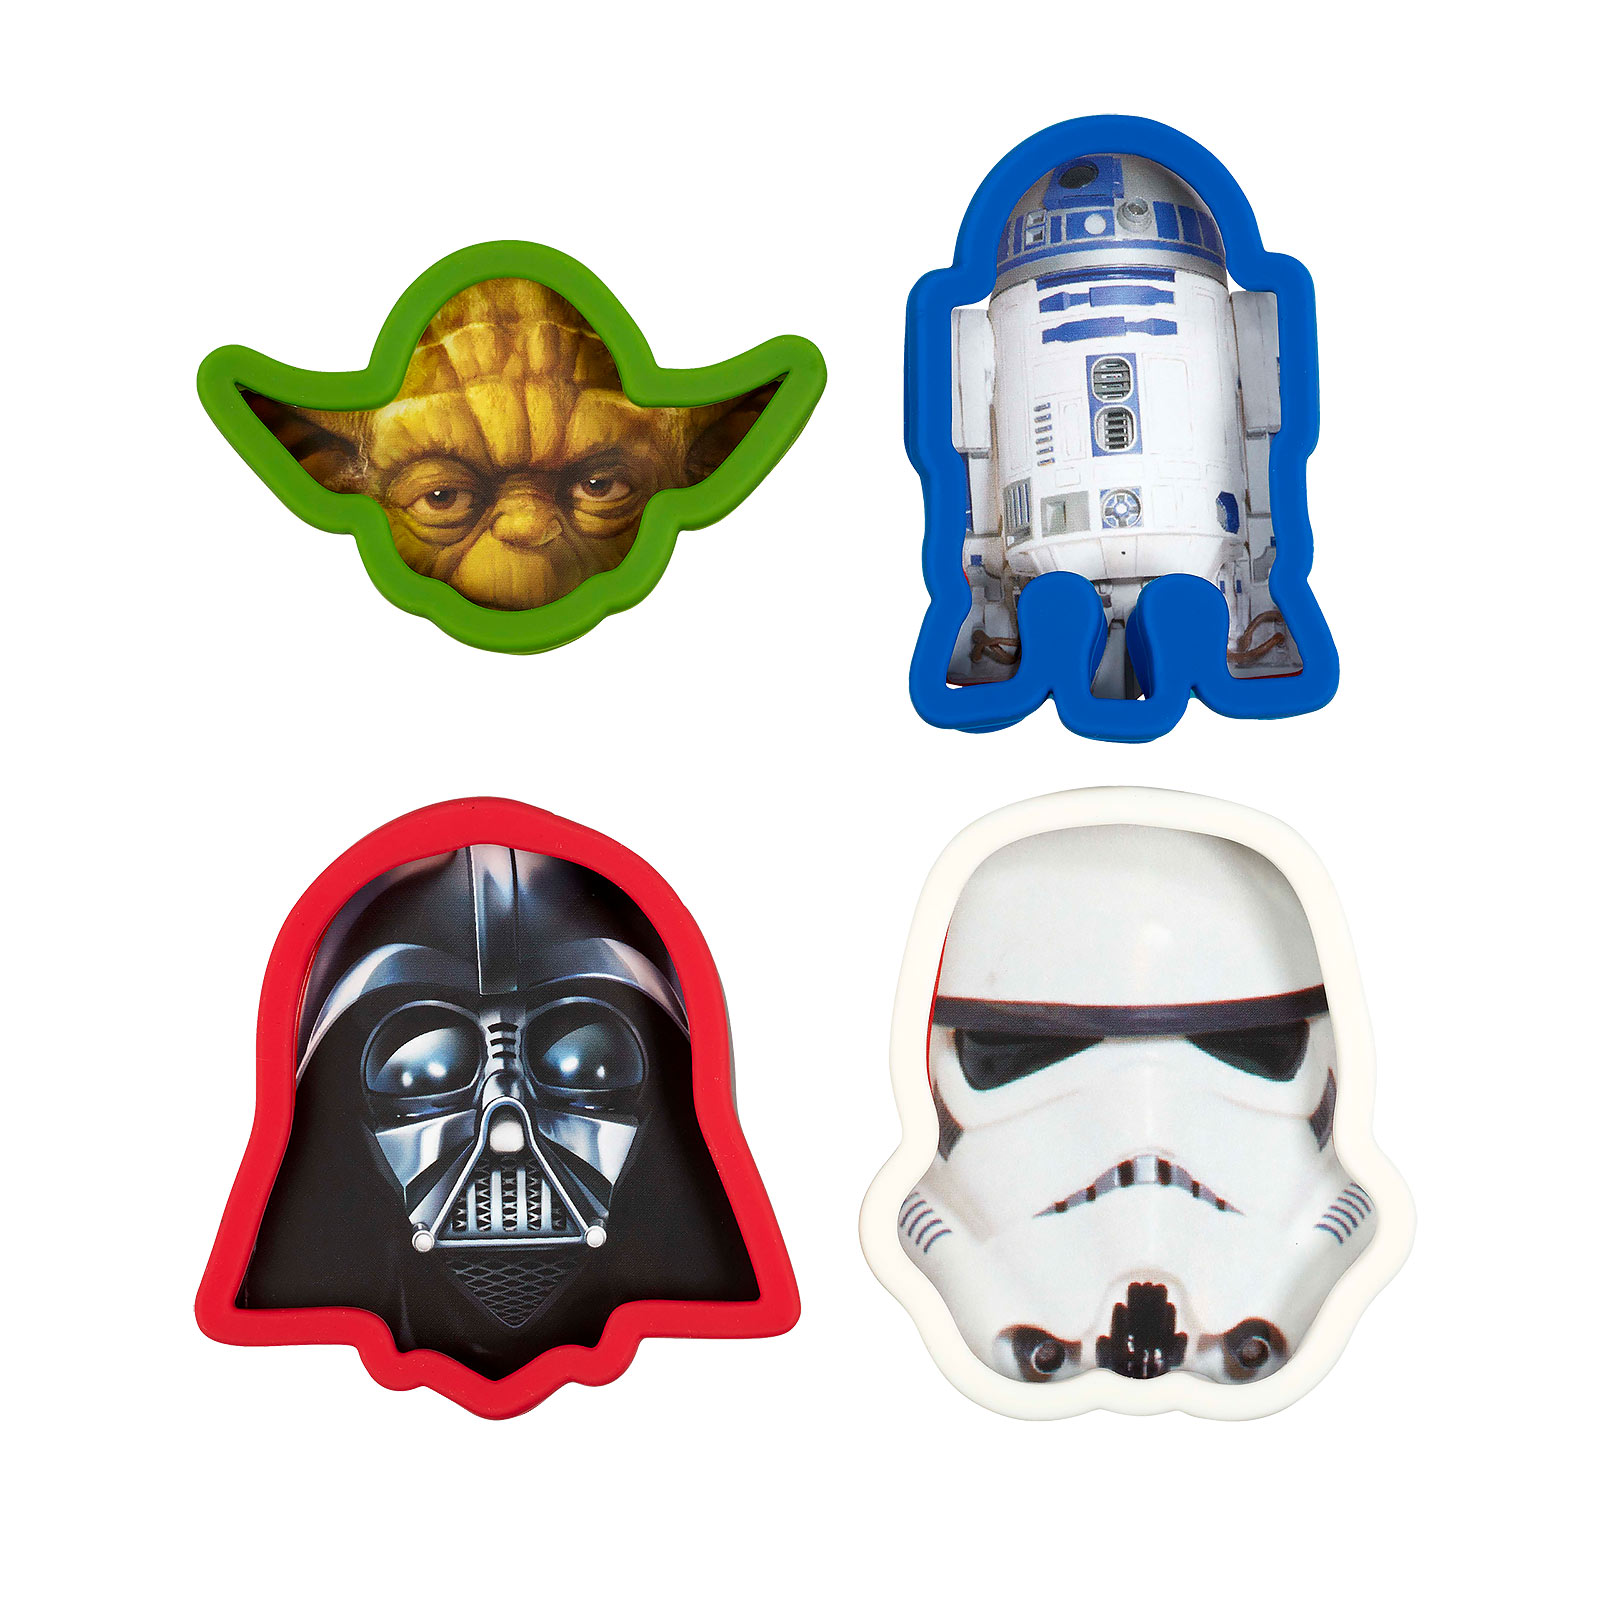 Star Wars Cookie Cutters 4-piece set